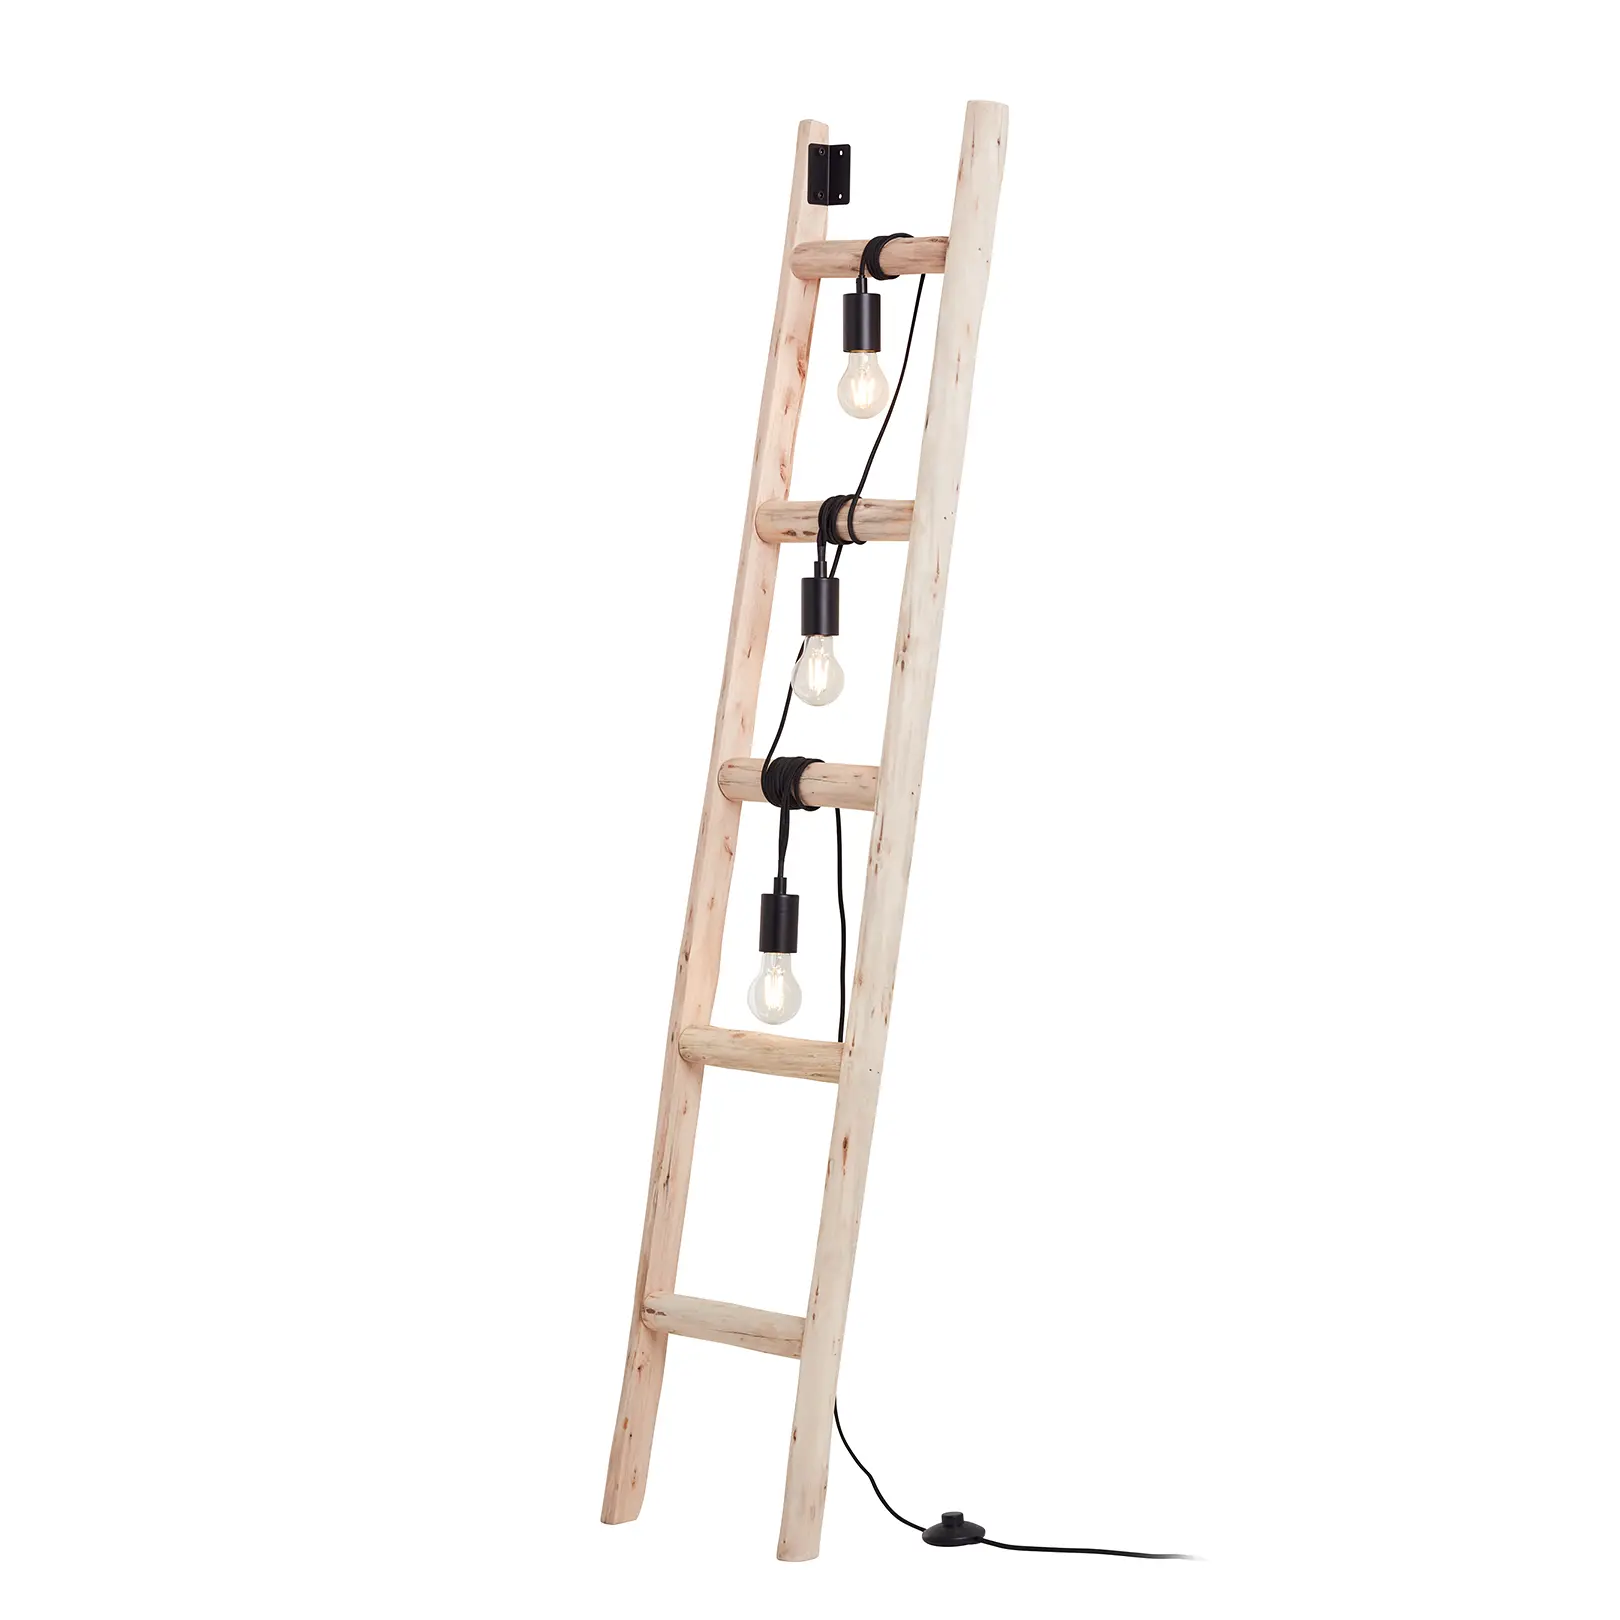 Stehleuchte Ladder